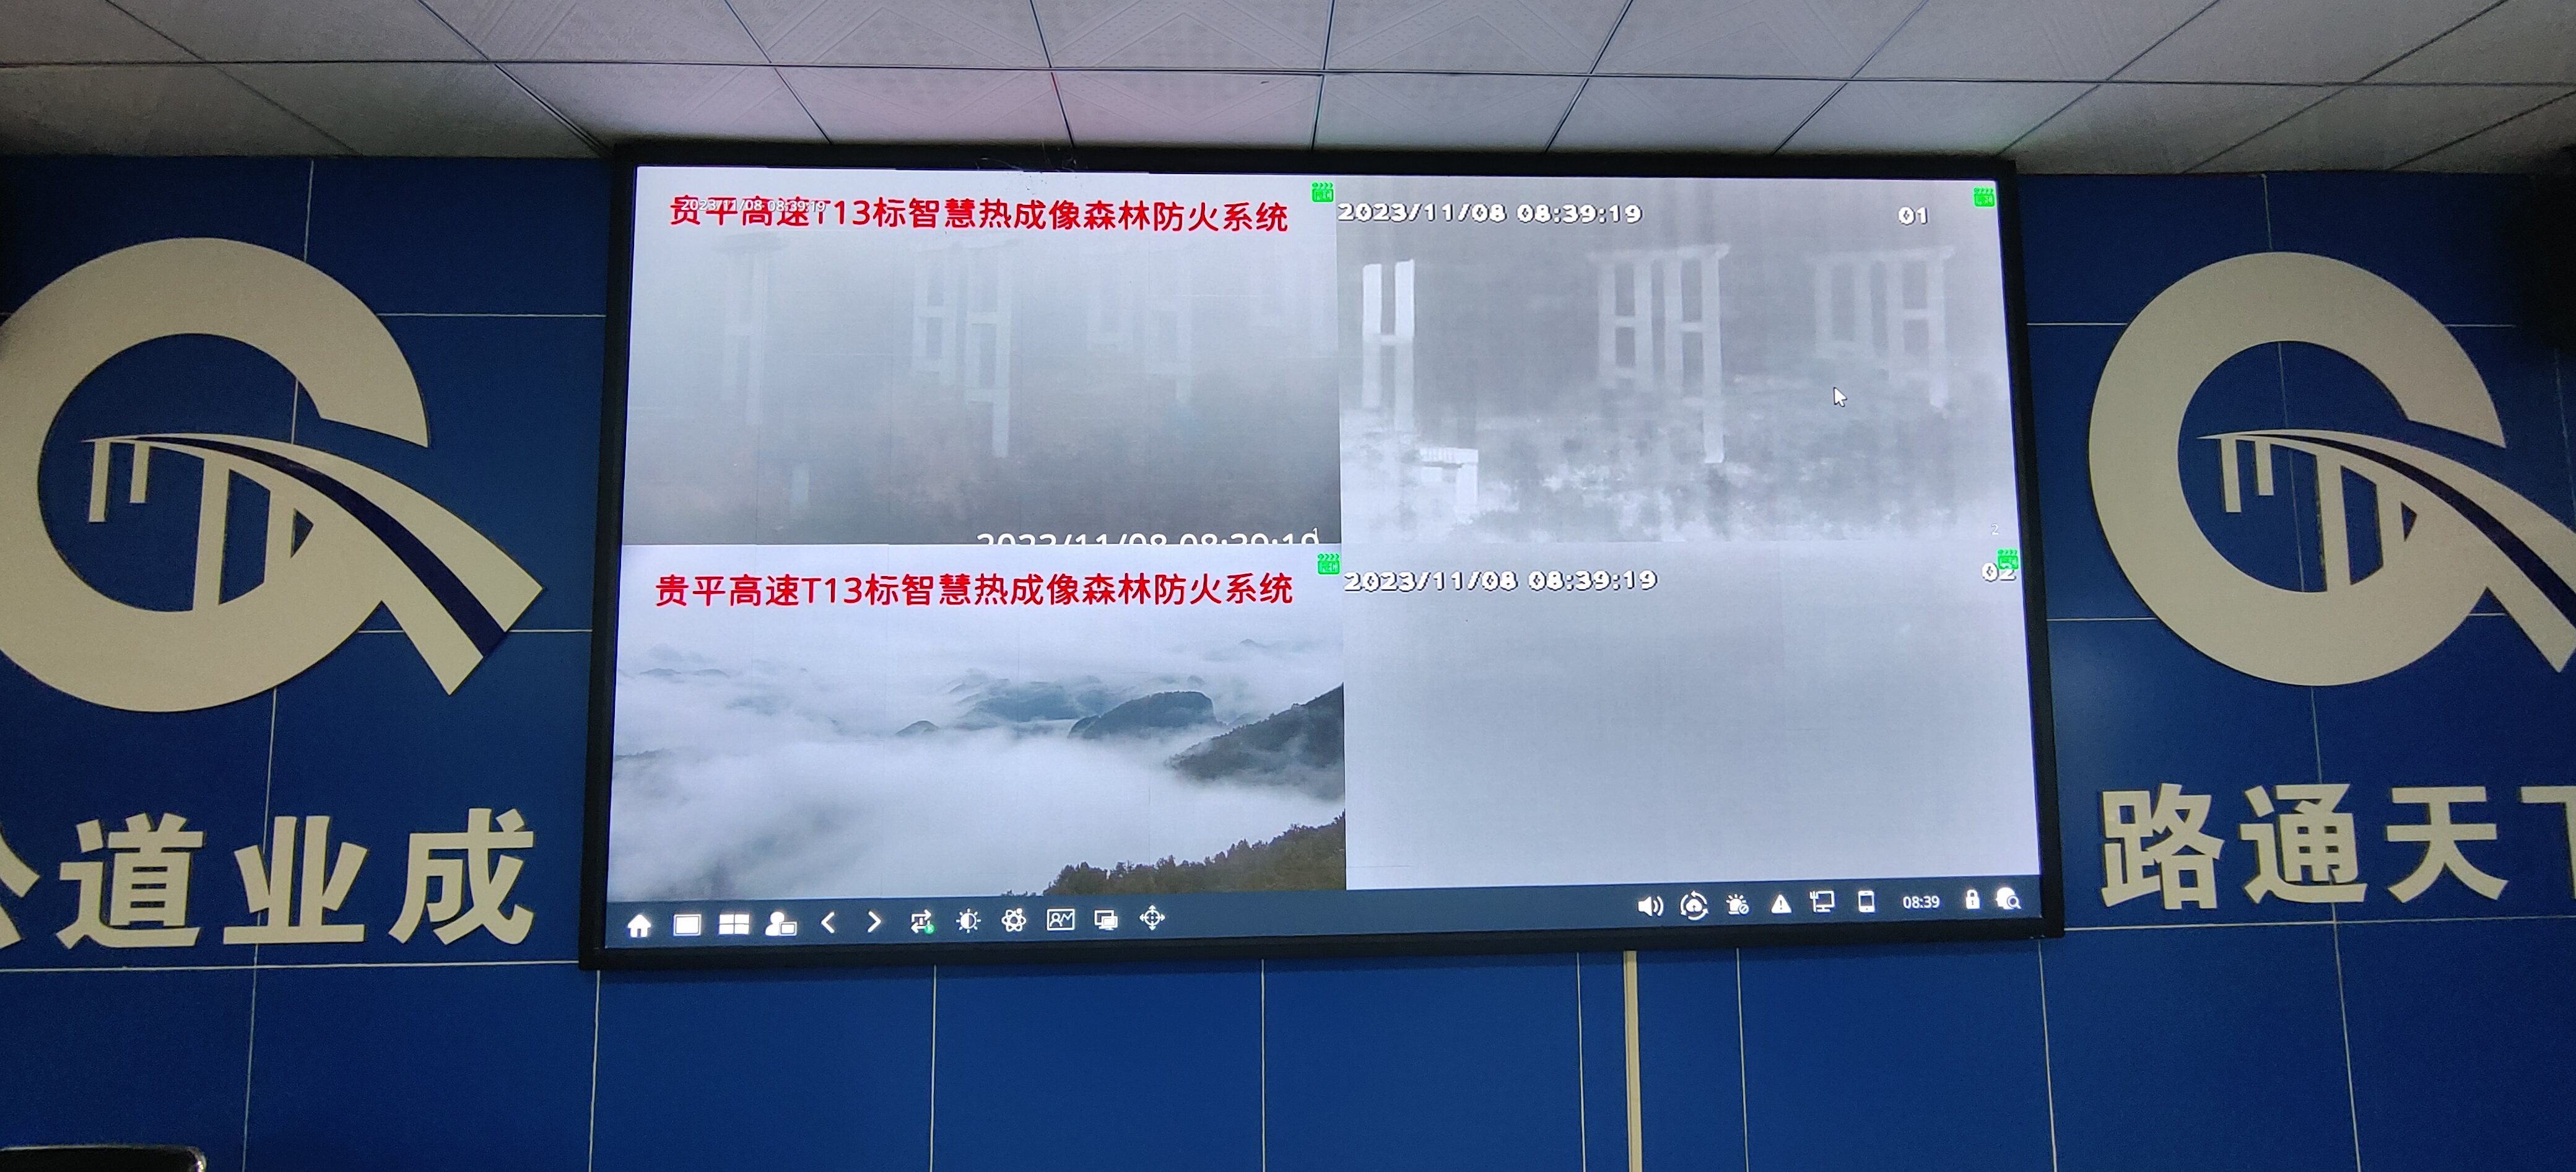 贵平13标森林防火系统远程监控屏幕.jpg